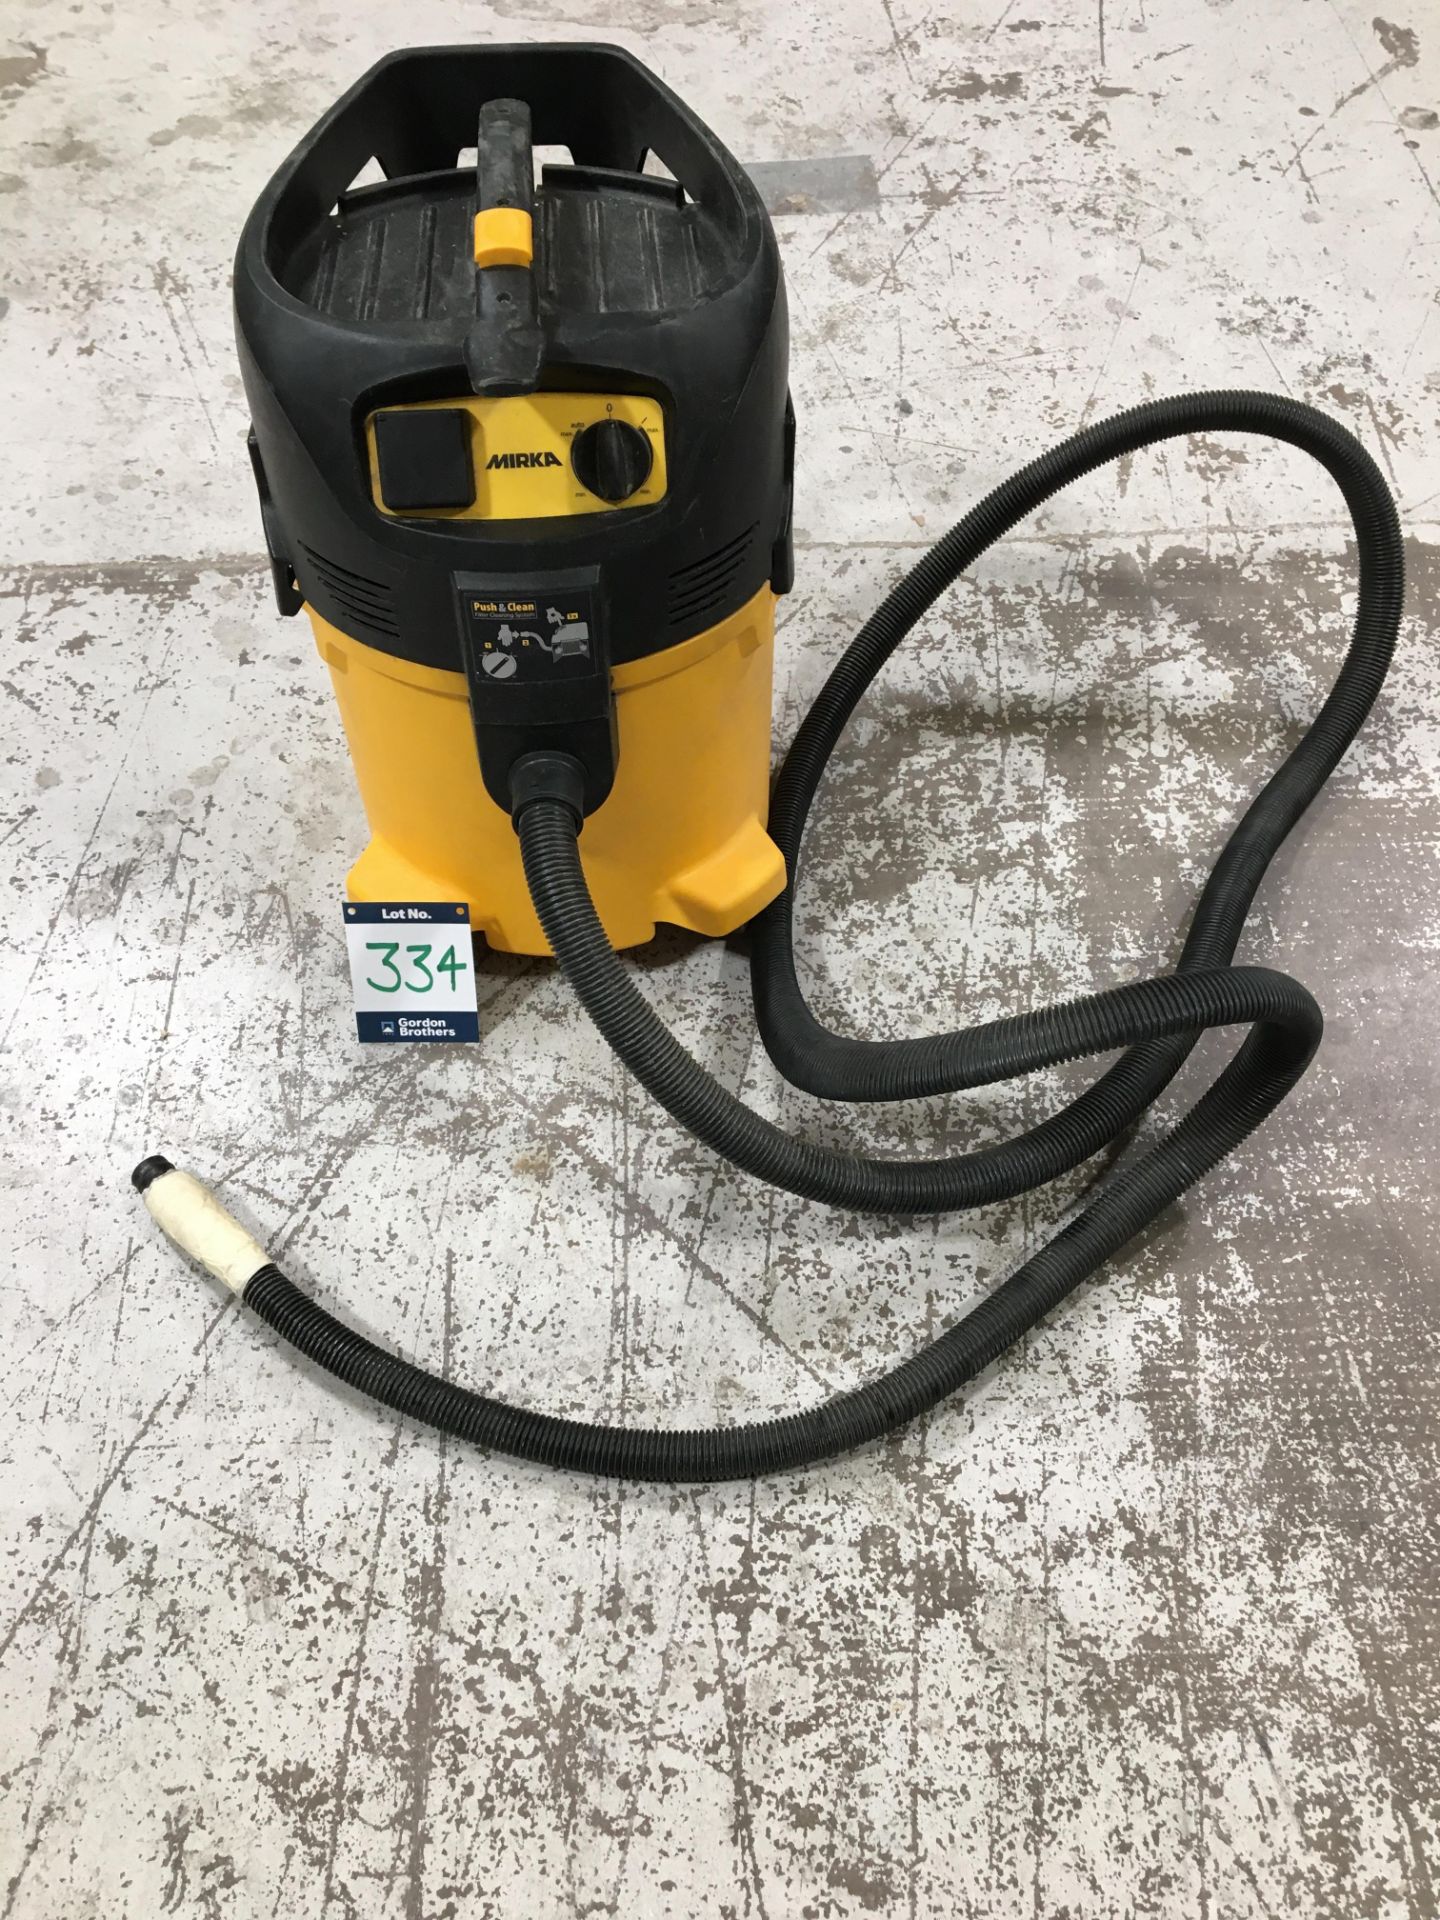 Mirka 915 L *GB* 230v vacuum dust extraction unit, Serial No. 0261073/1505 with flexi hose (No